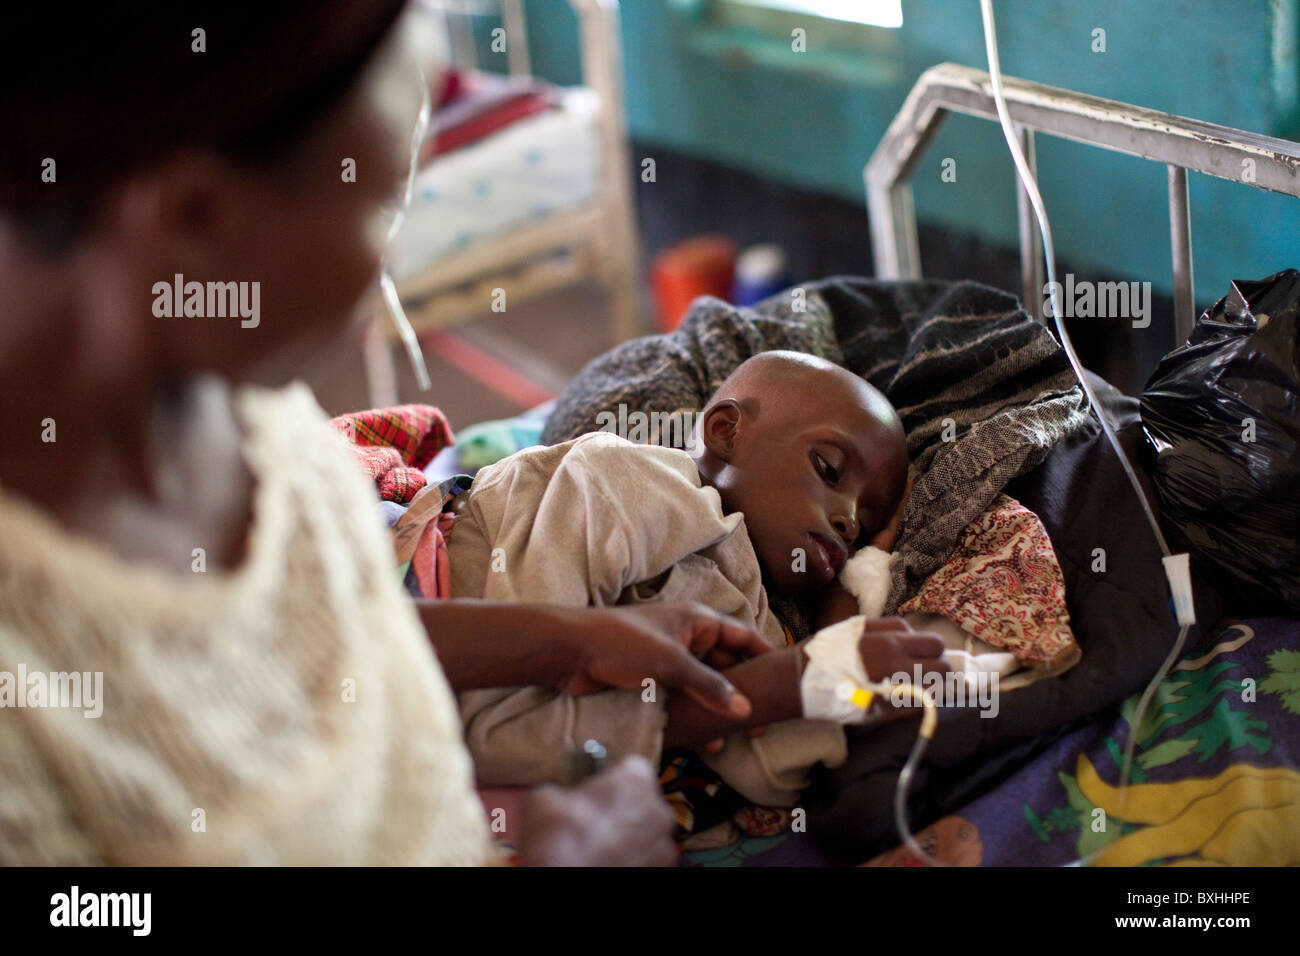 Ein Kind an AIDS sterben erhält medizinische Behandlung in einem Krankenhaus in Amuria, Uganda, Ostafrika. Stockfoto